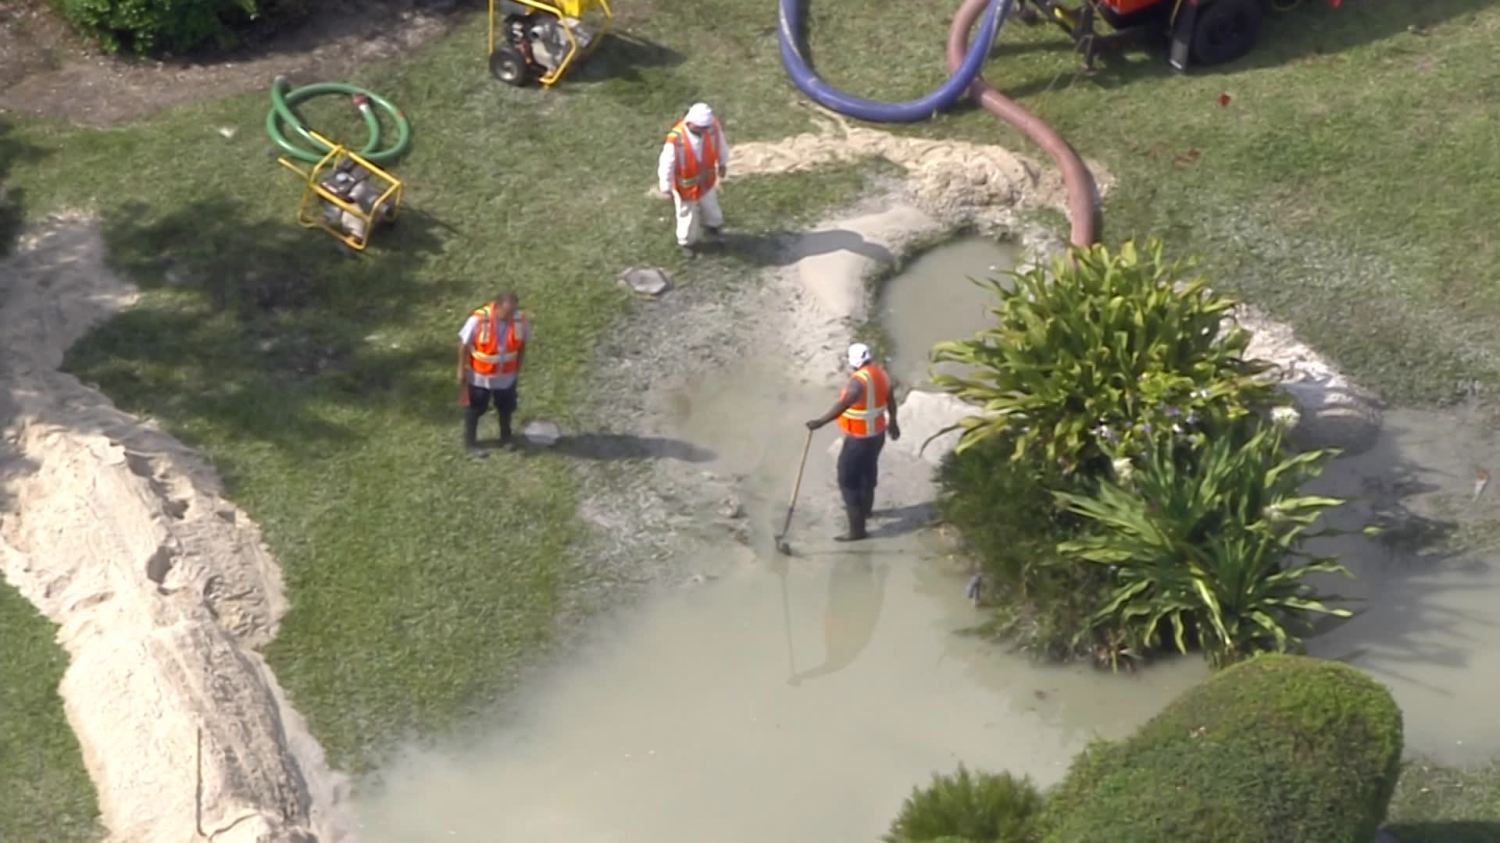 Miami Beach pidió a residentes y empresas que reduzcan el uso del agua tras las roturas de líneas